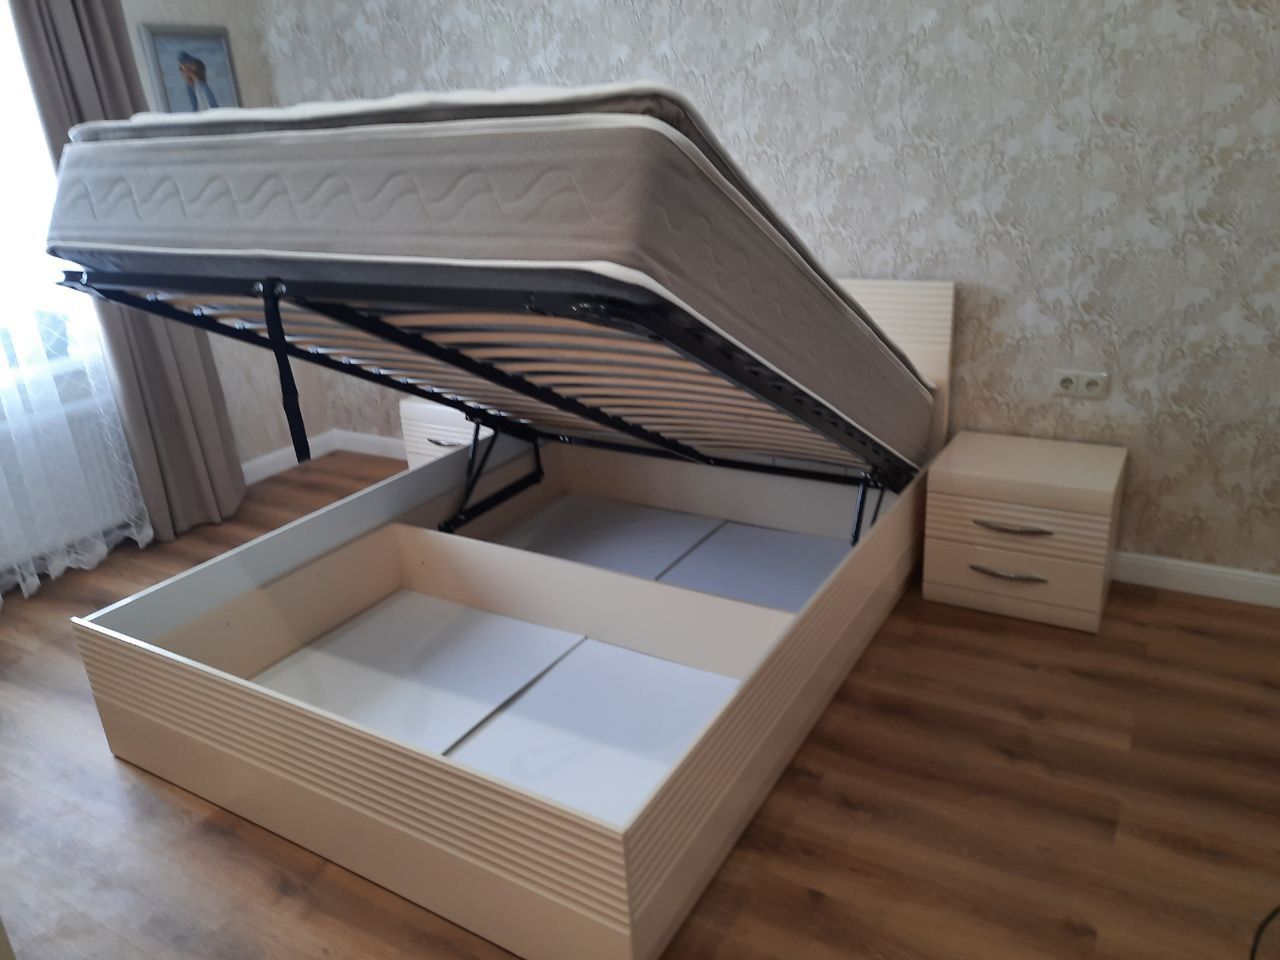 Двуспальная кровать "Афина" 160 х 200 с подъемным механизмом цвет белый глянец  / sancho 2202